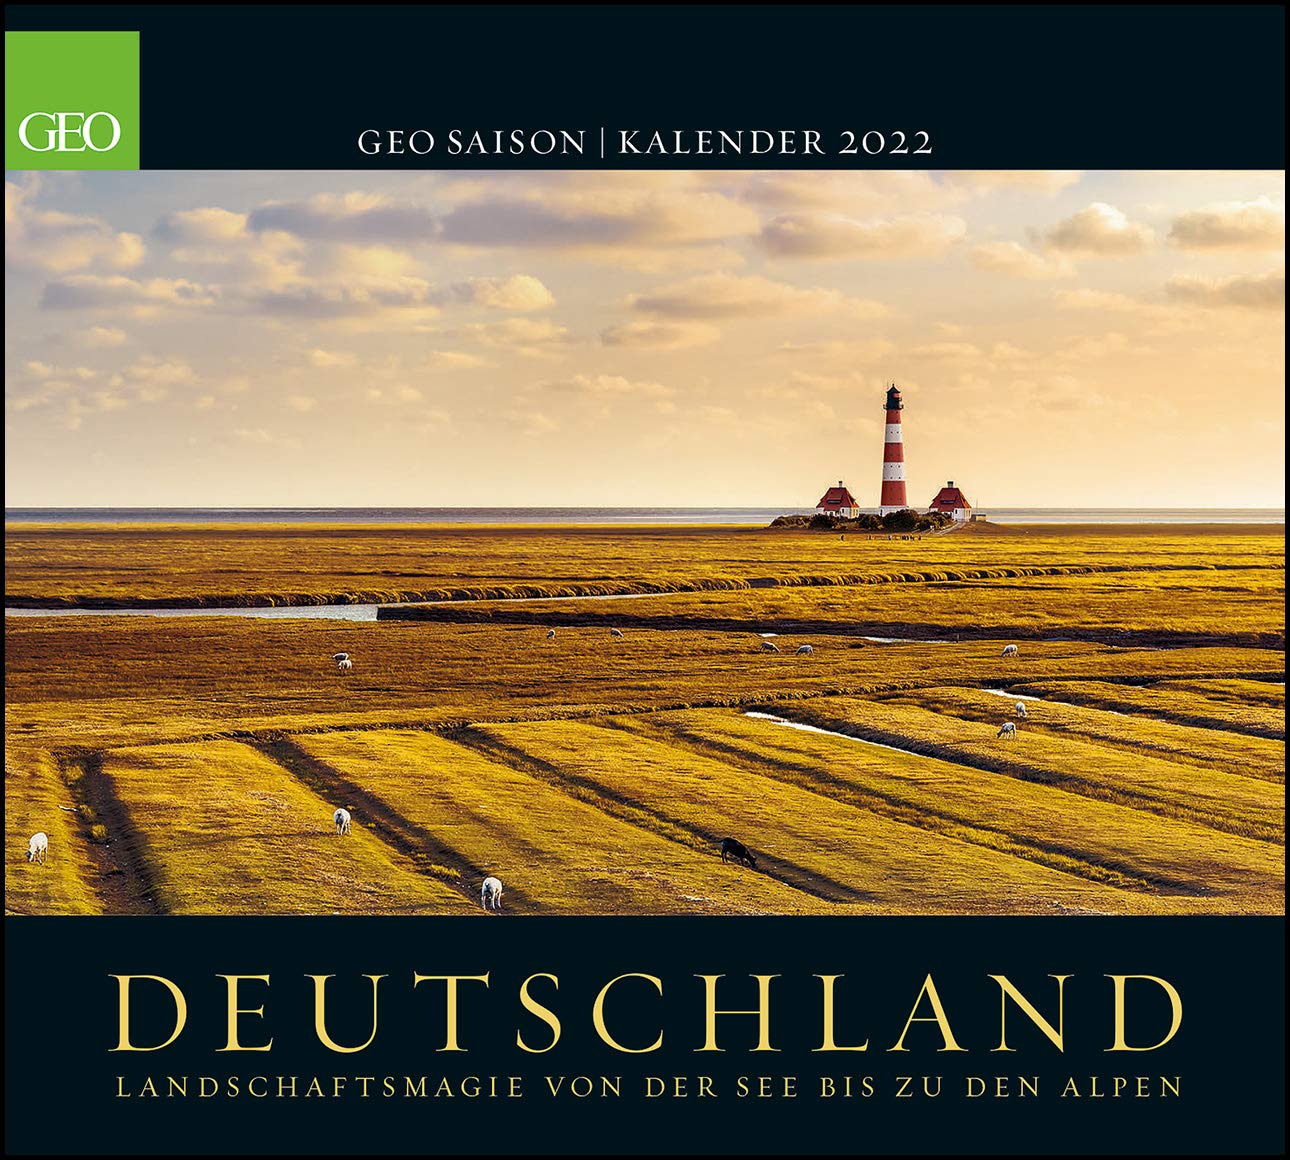 GEO_Saison_Deutschland_calendar_2022_cover